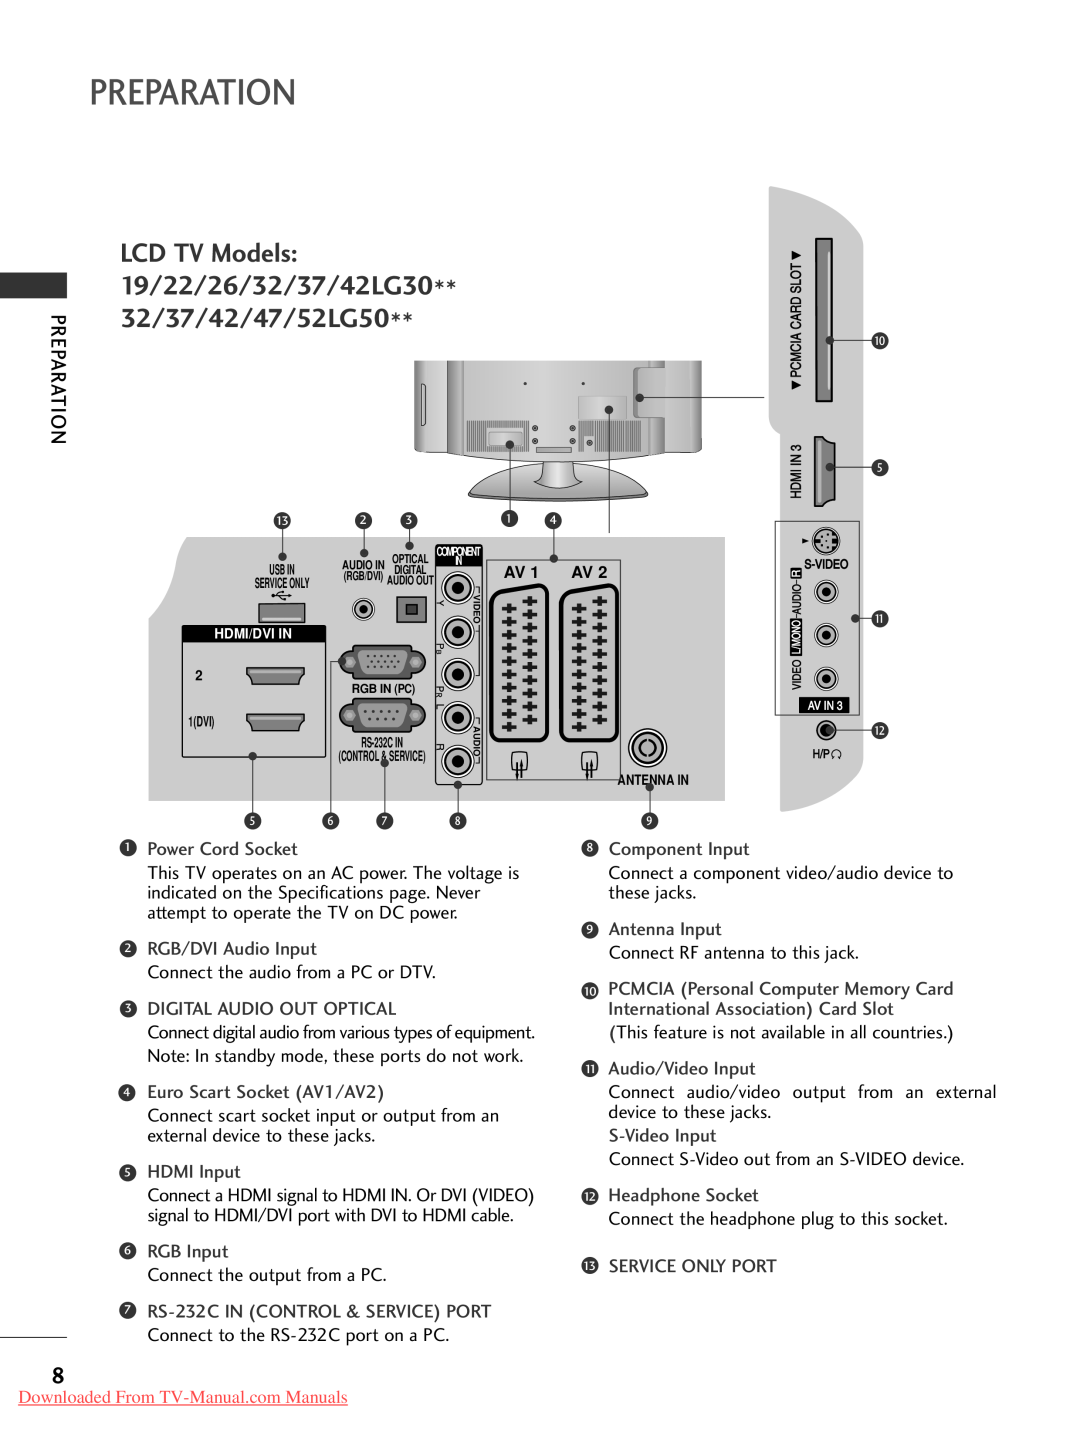 LG Electronics 4 42 2L LG G5 50 owner manual LCD TV Models 19/22/26/32/37/42LG30** 32/37/42/47/52LG50, Preparation, AV 1 AV 